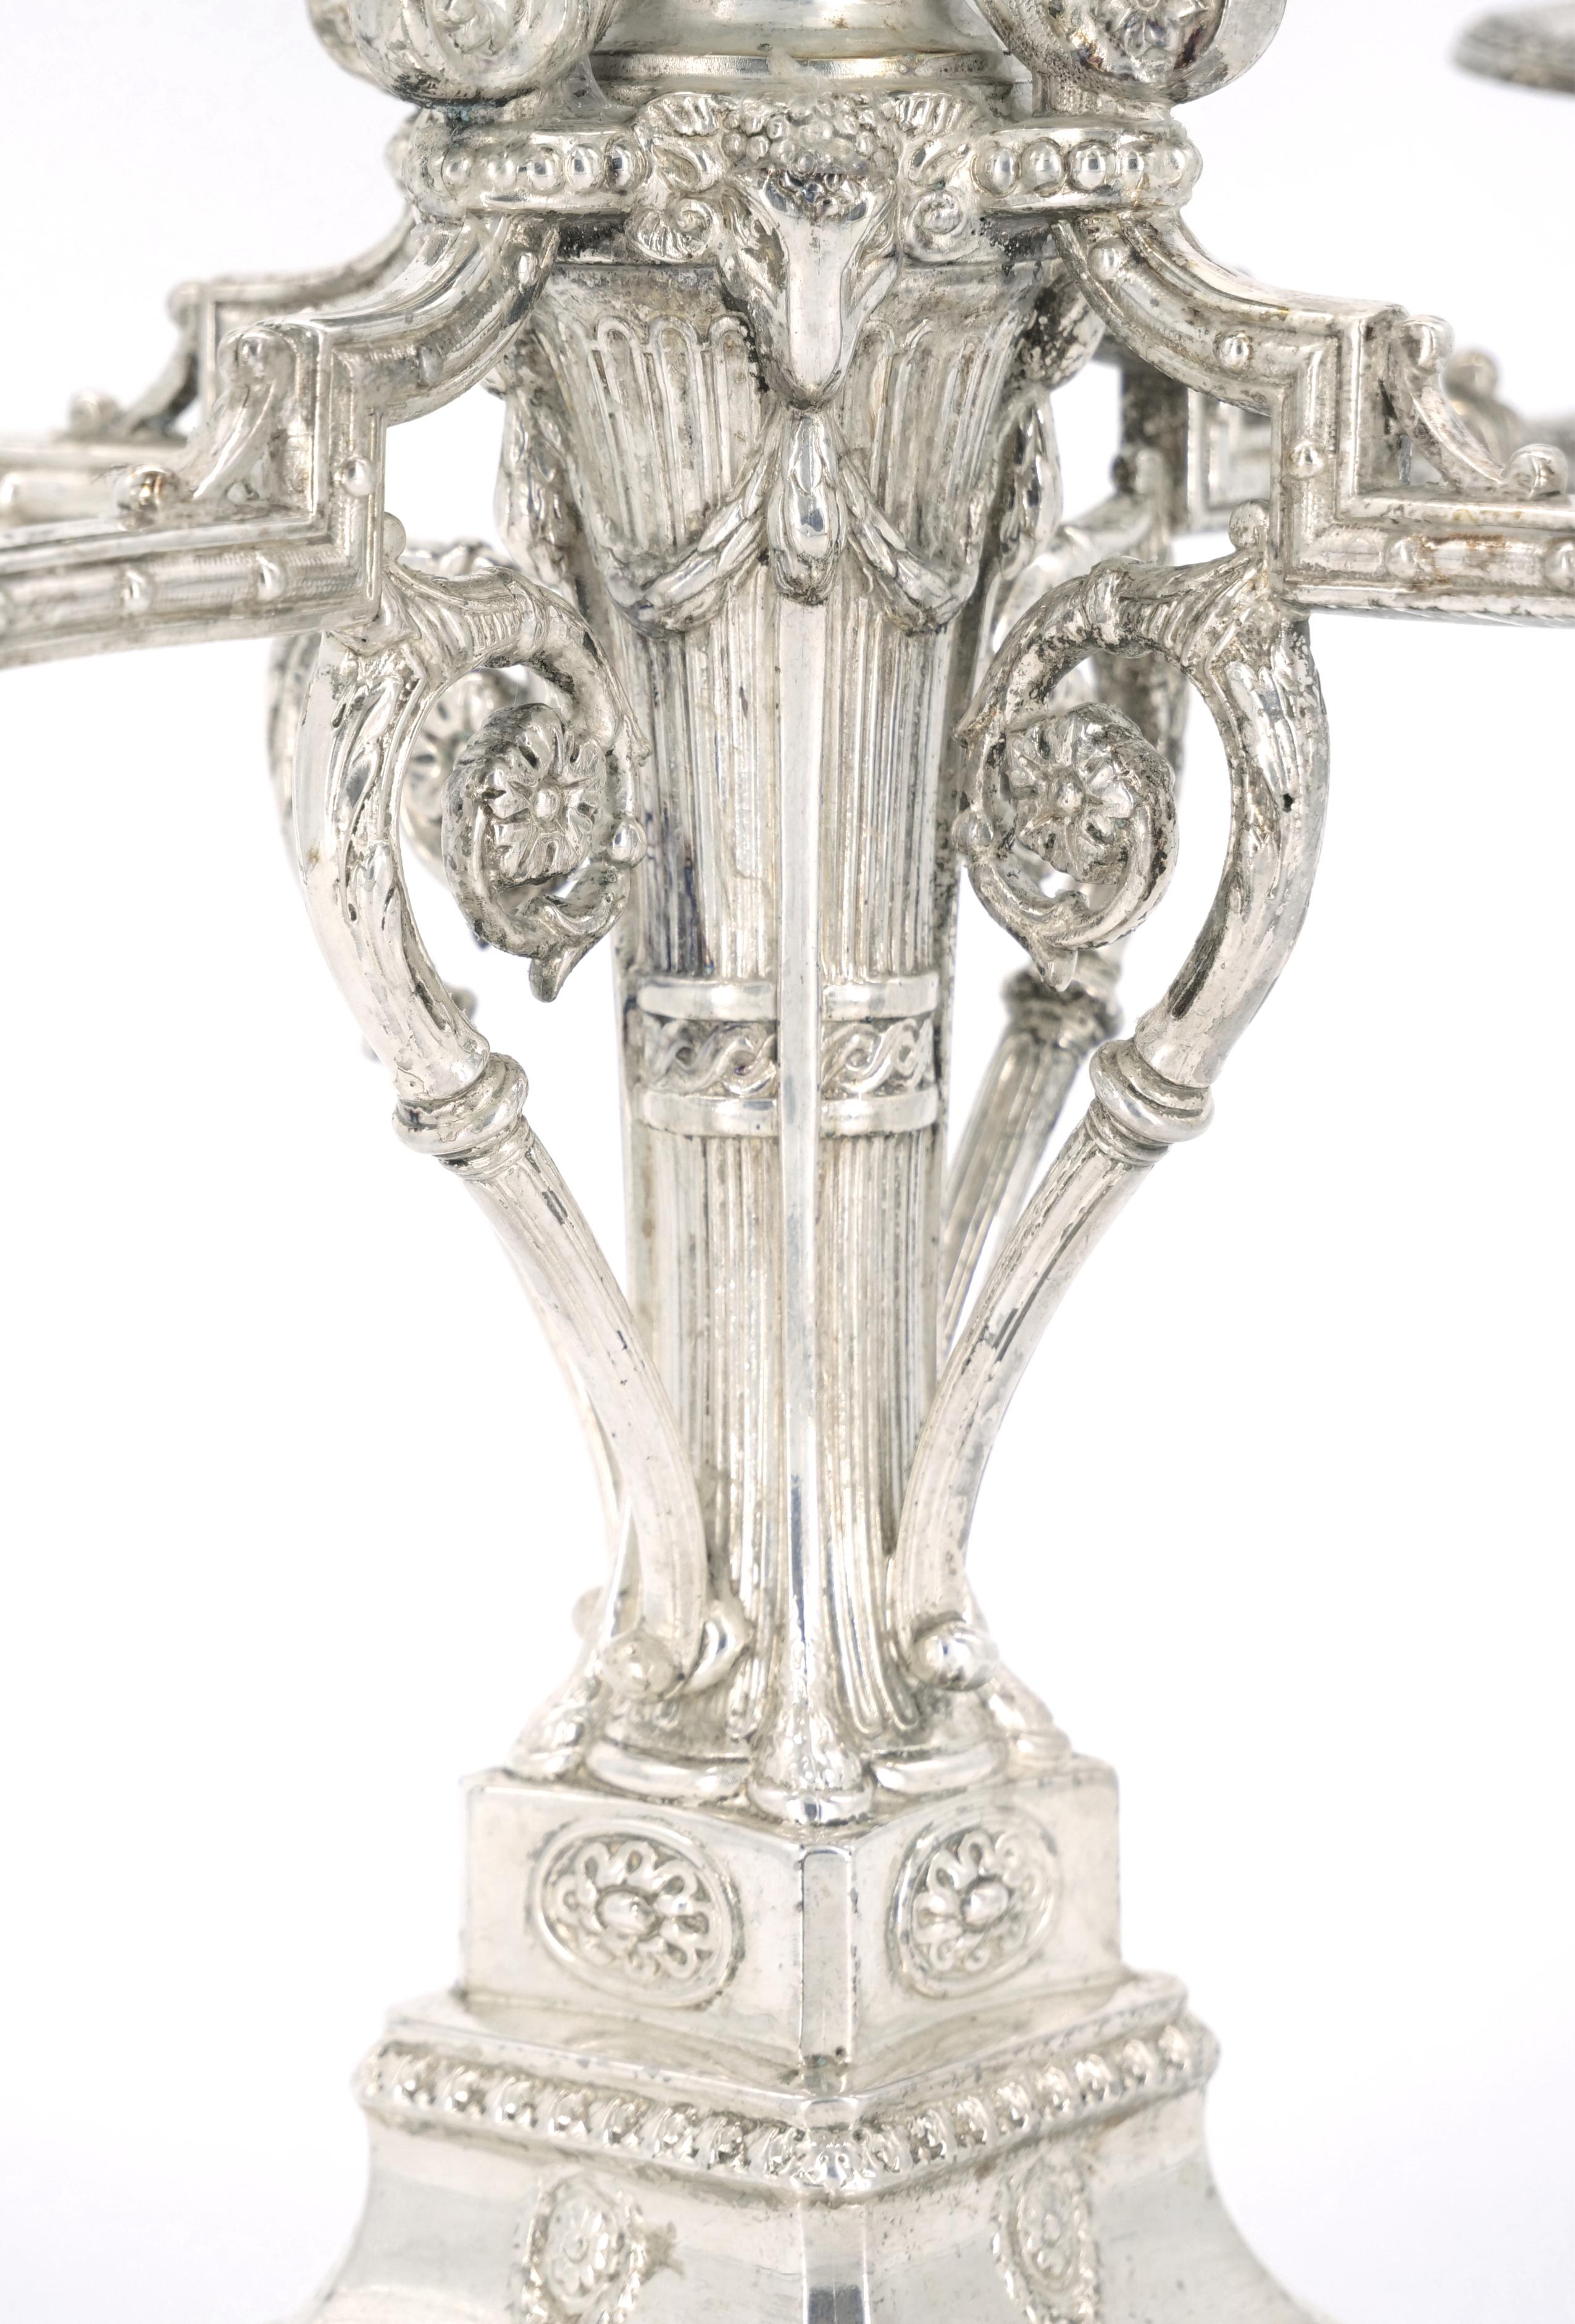 Exceptionnelle paire de candélabres en argent Sheffield de l'époque victorienne, vers 1860, avec cinq bras de bougie et de fins motifs repoussés et ciselés comprenant des guirlandes de campanules, des urnes, des rinceaux, des rosettes et des têtes